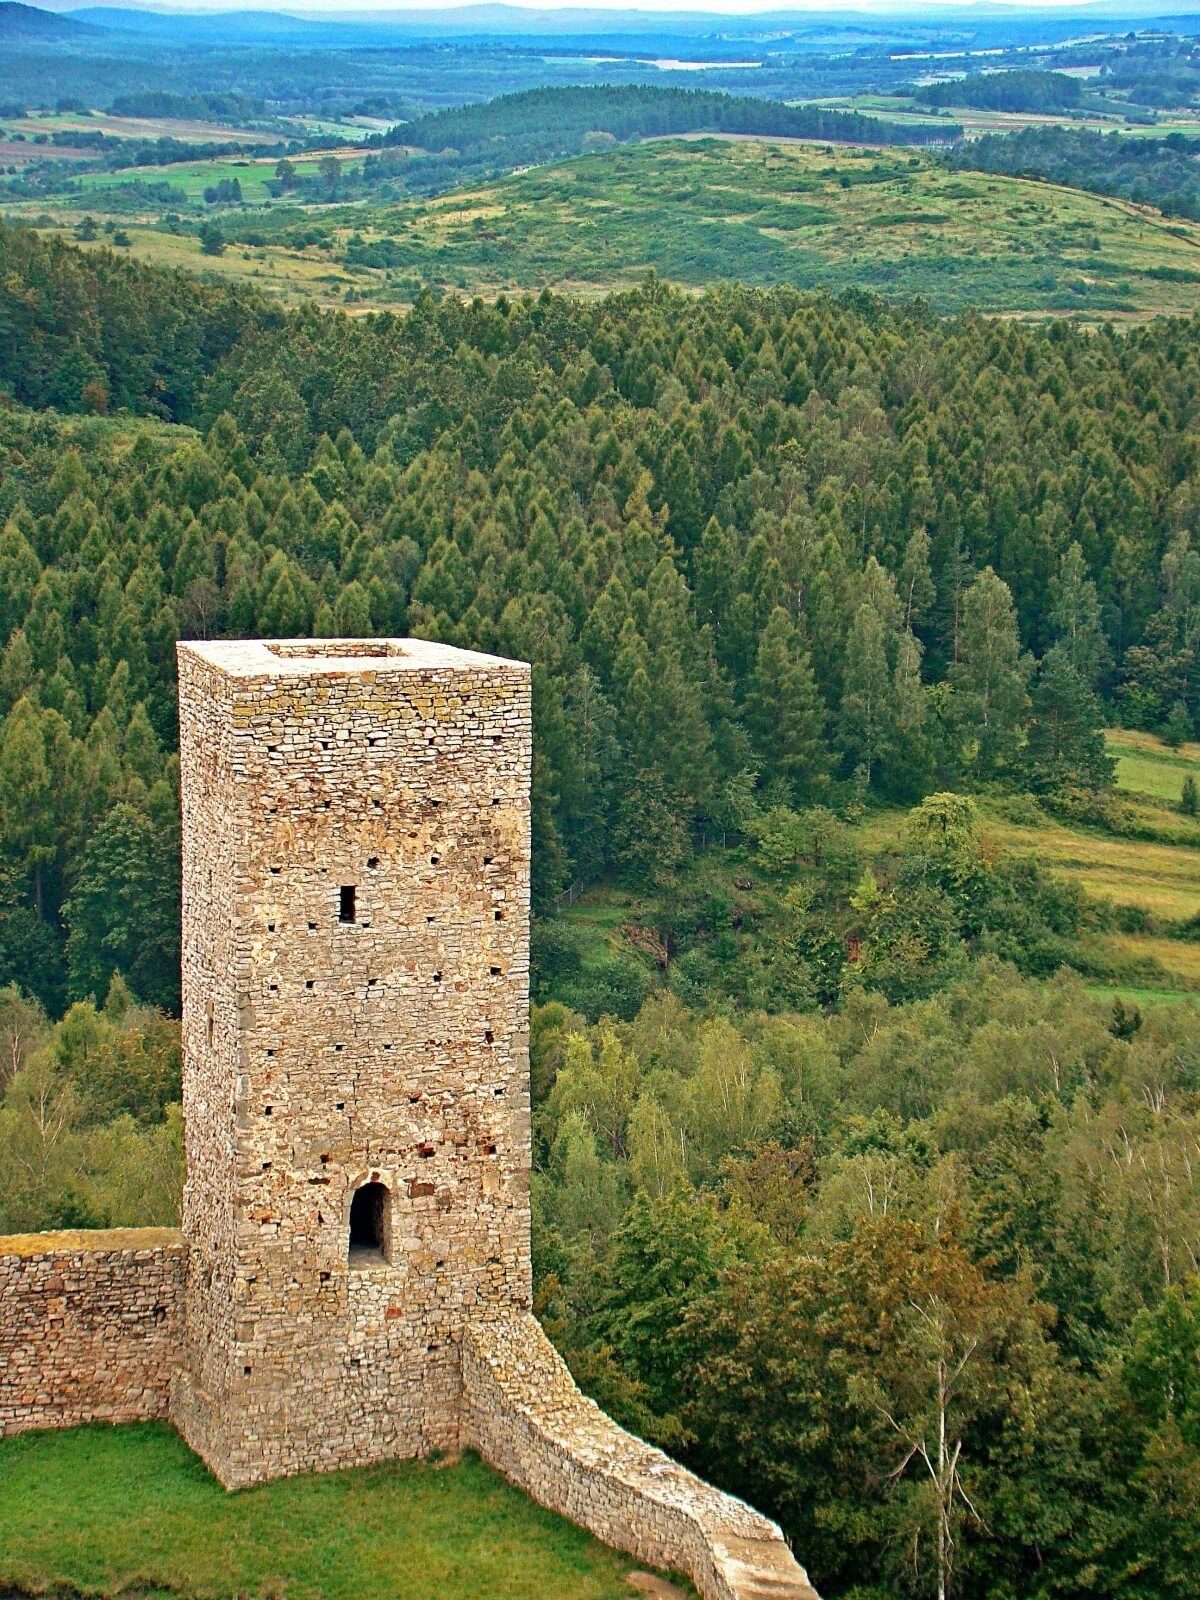 Башня. Башня Армении Тауэр. Башня Хинке. Суурхузенская башня. Верденская башня.